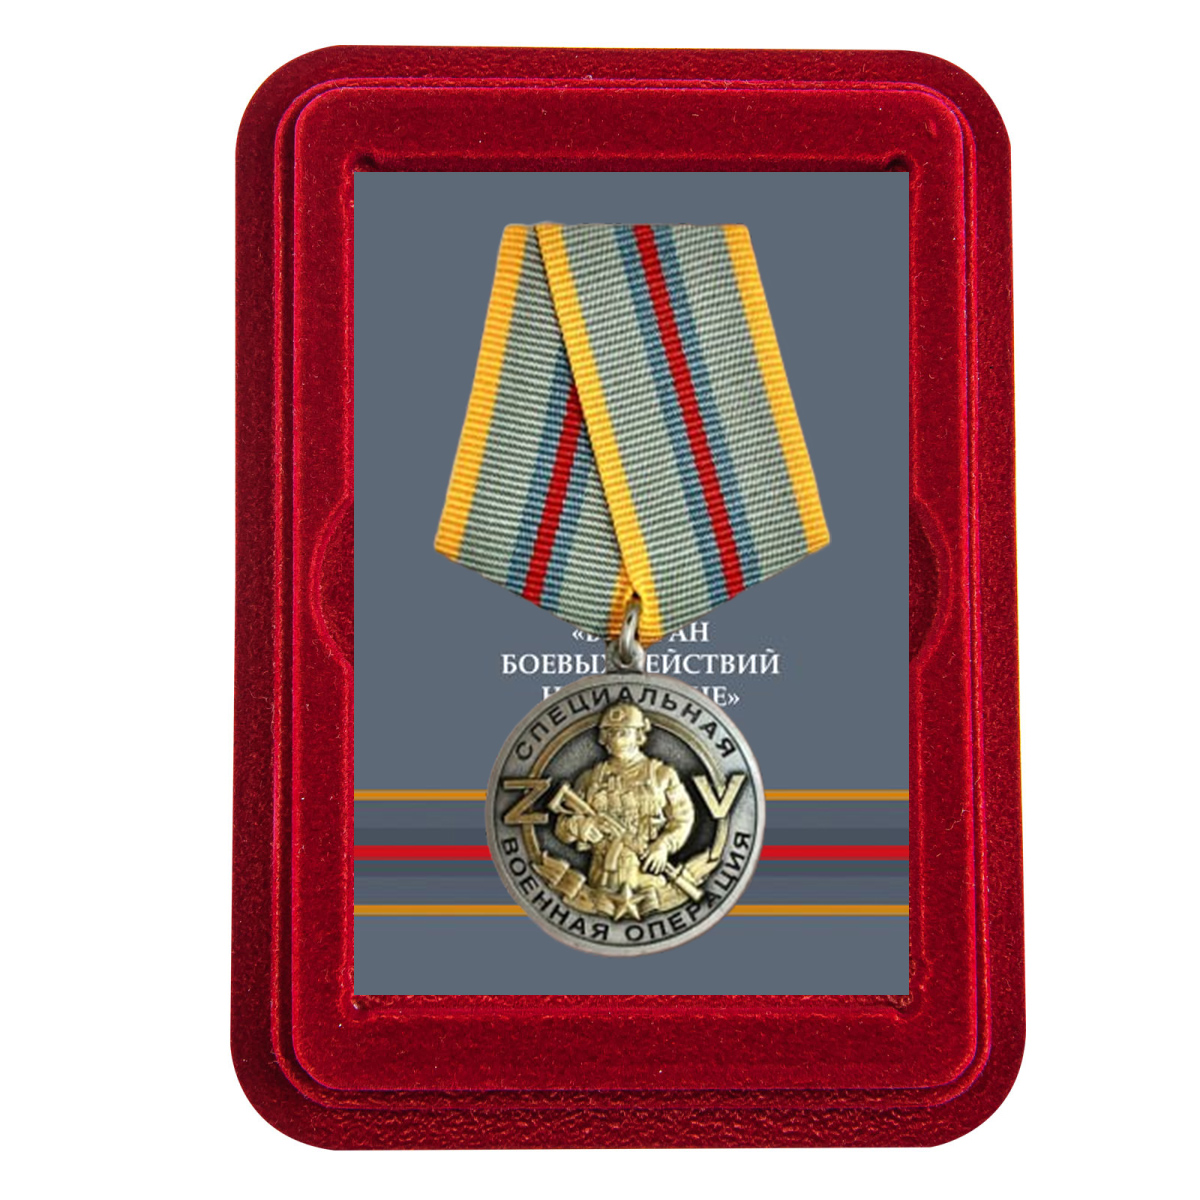 Купить медаль Ветеран боевых действий на Украине с доставкой